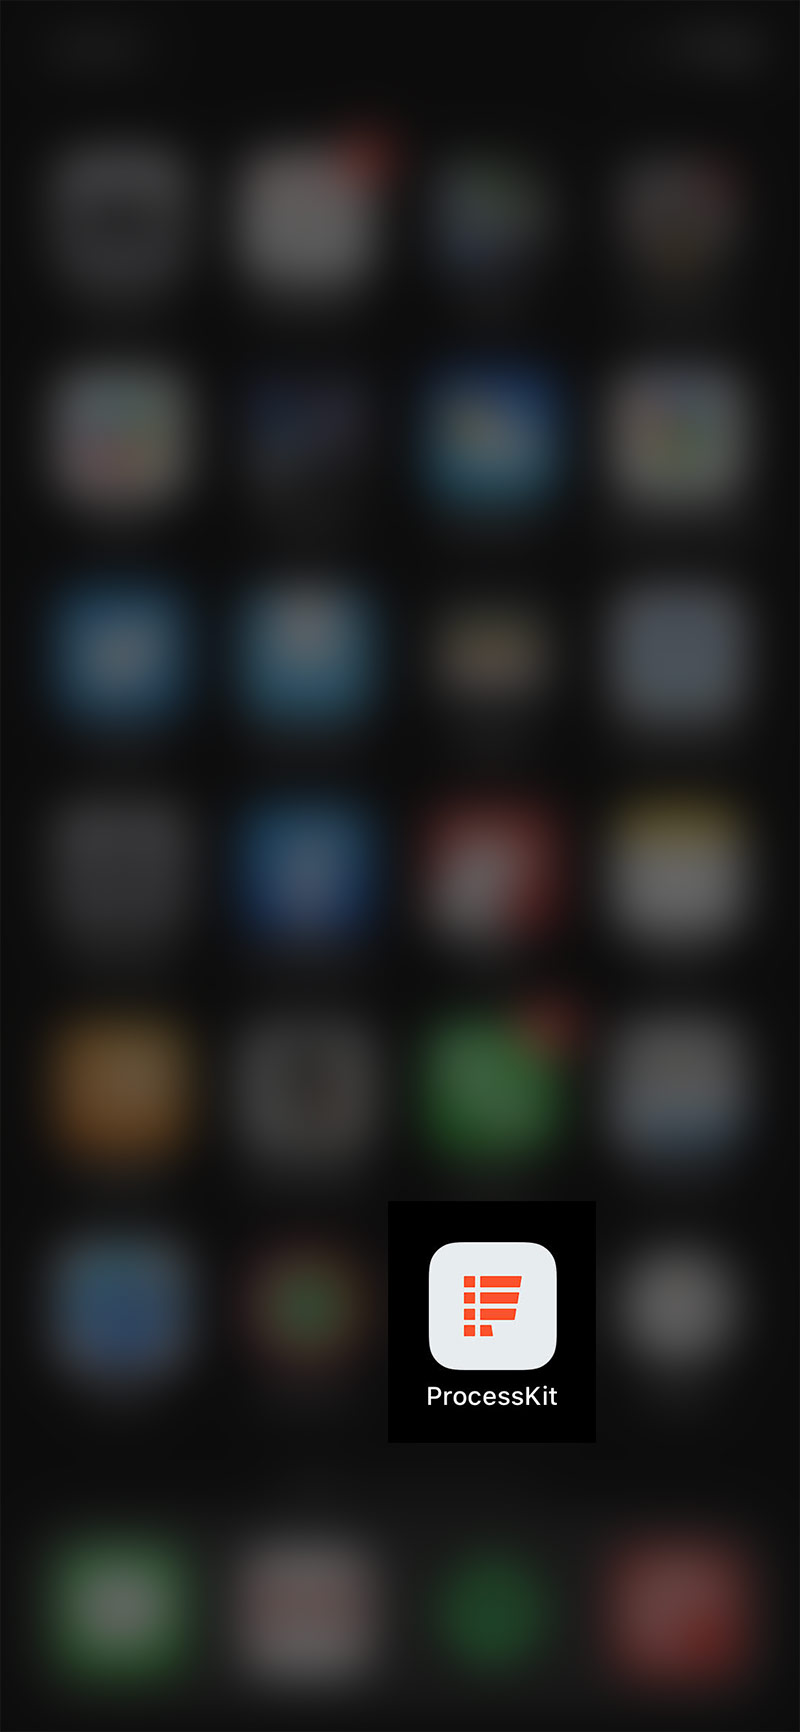 processkit mobile homescreen icon